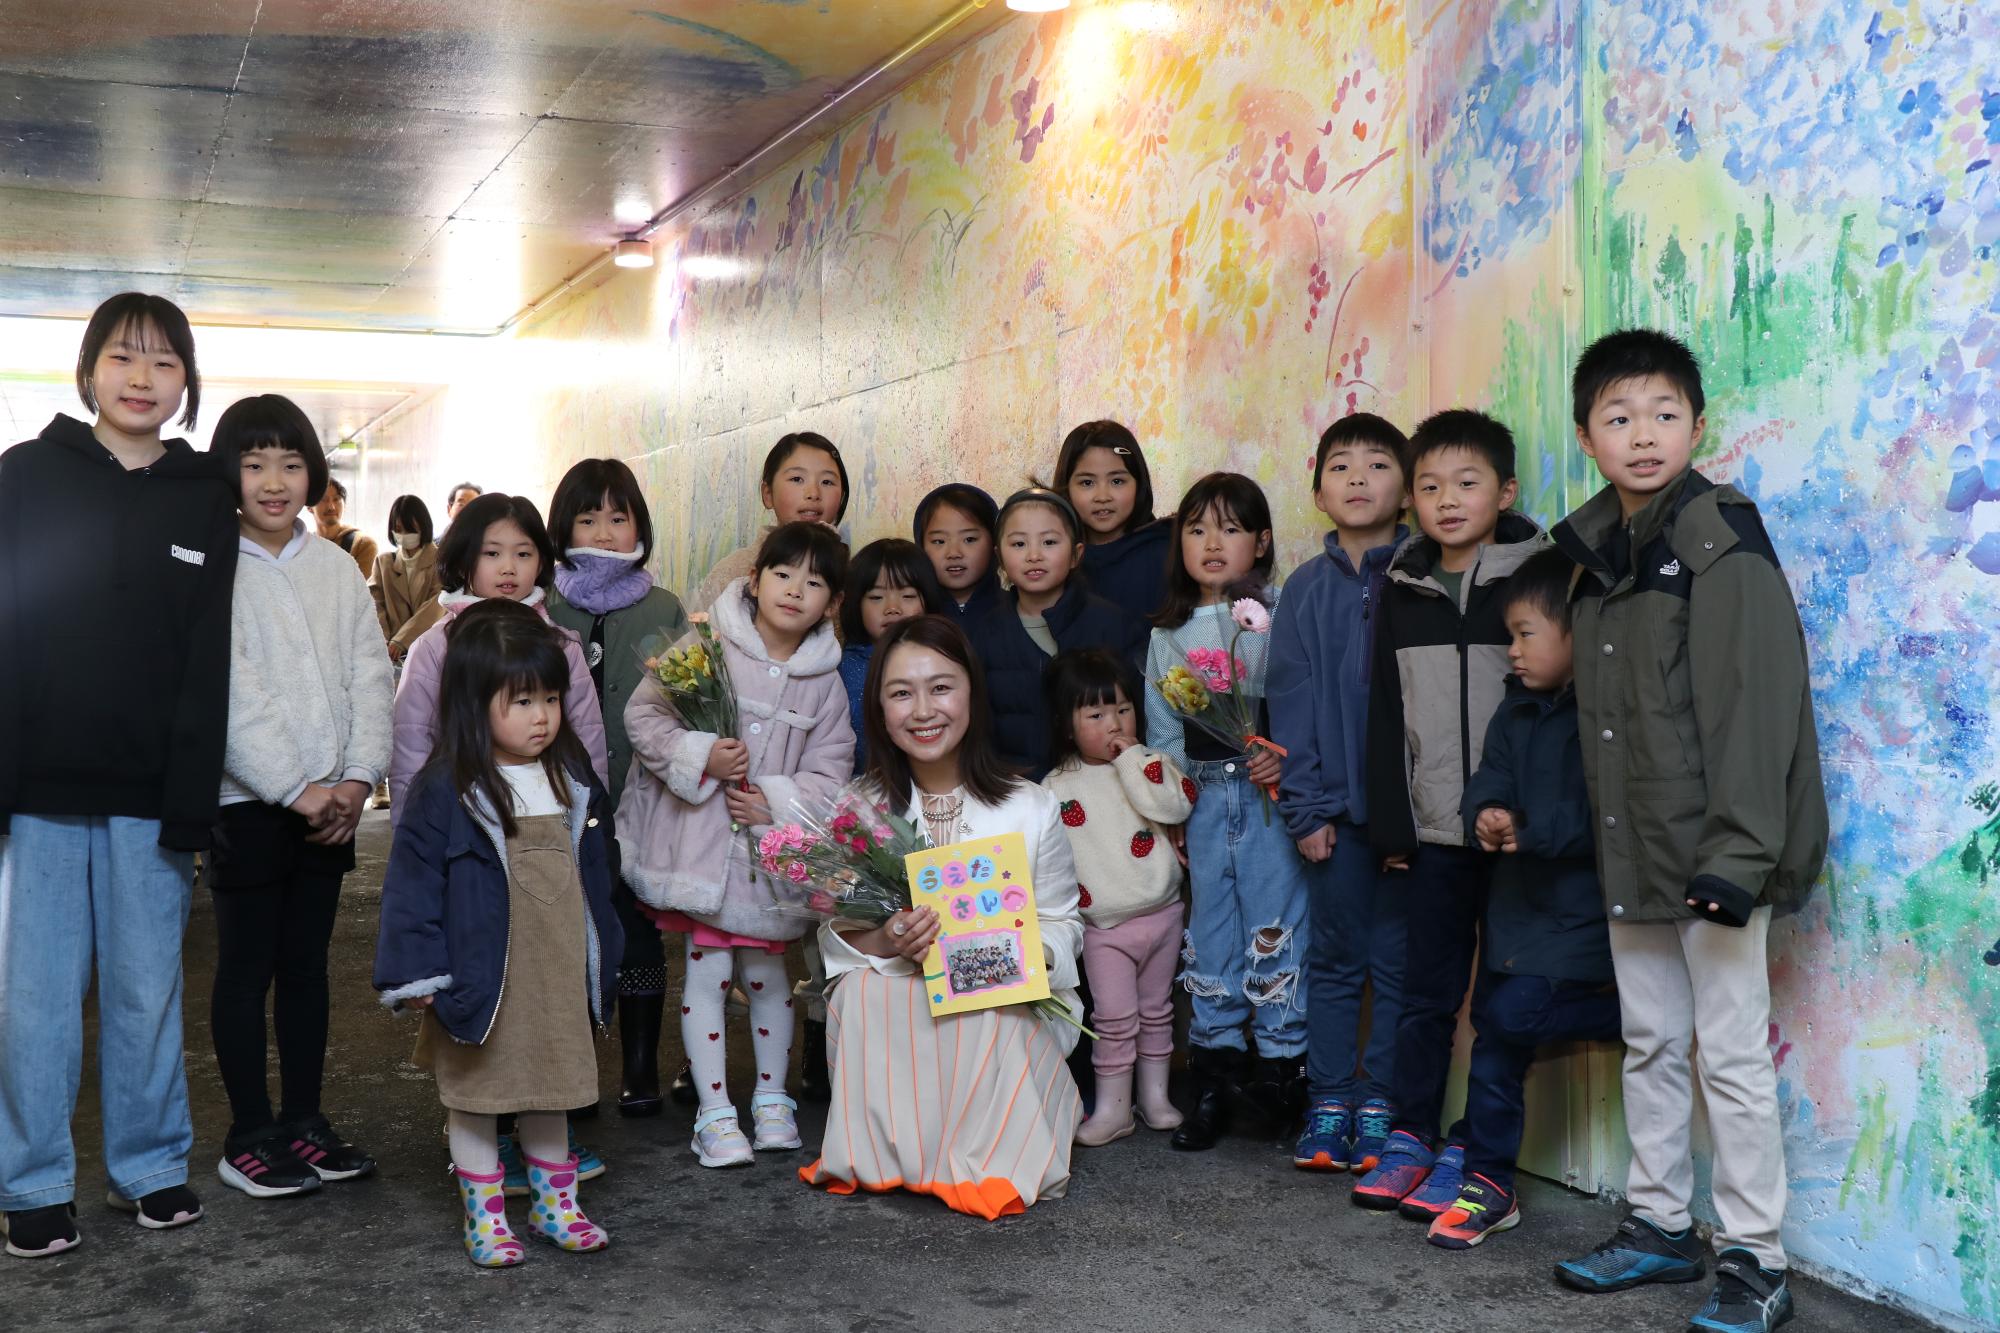 シソラミチお披露目会で美術作家の植田志保さんを囲んで子どもたちが並んでいる写真